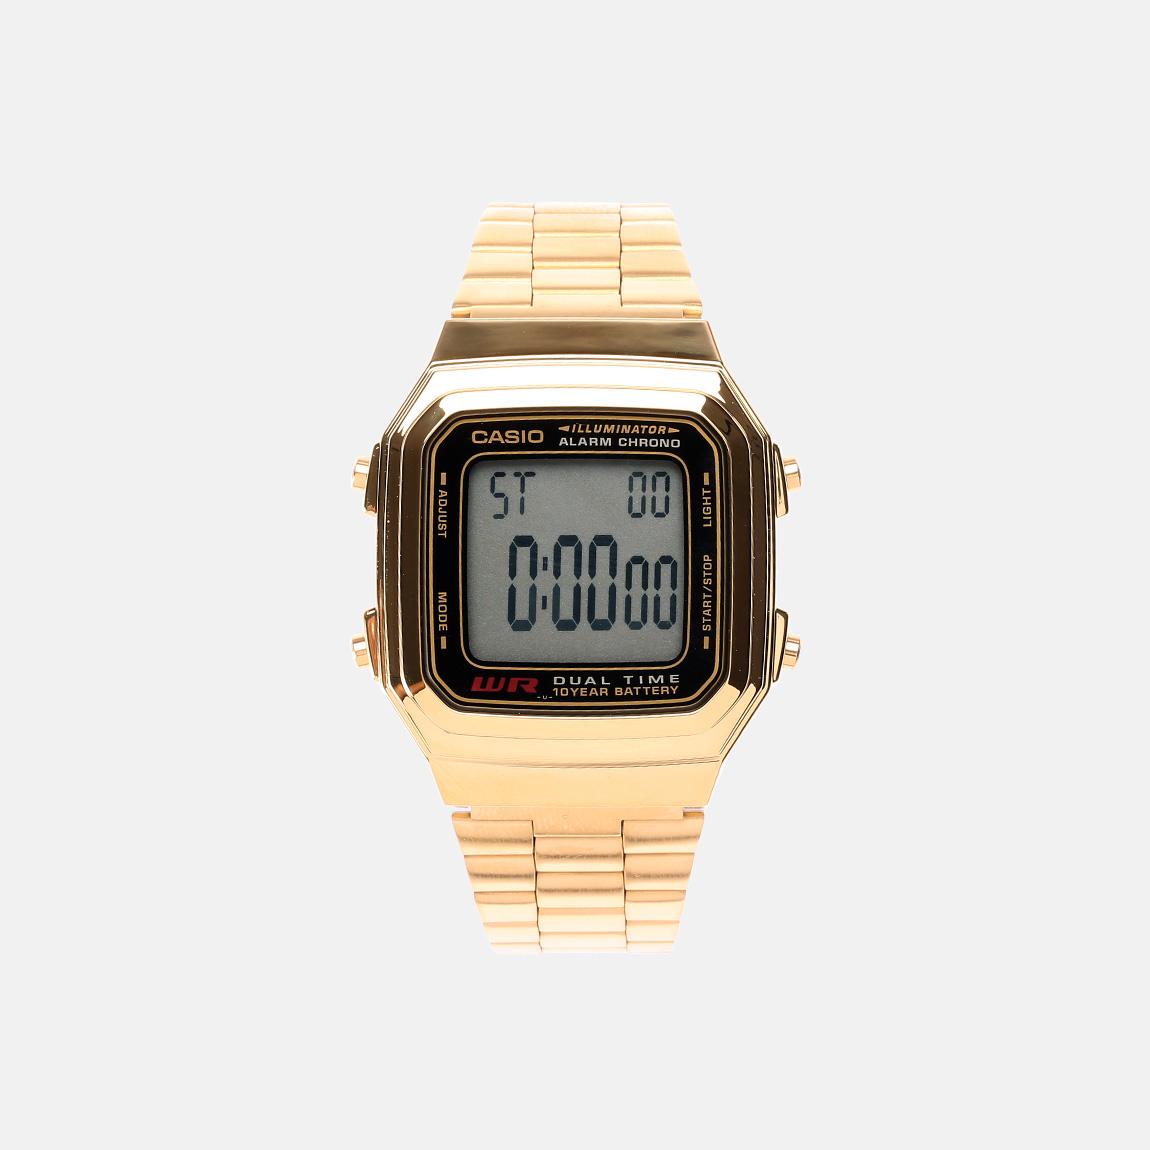 Wrist Watches Digital – Gold Casio Watches | Superbalist.com